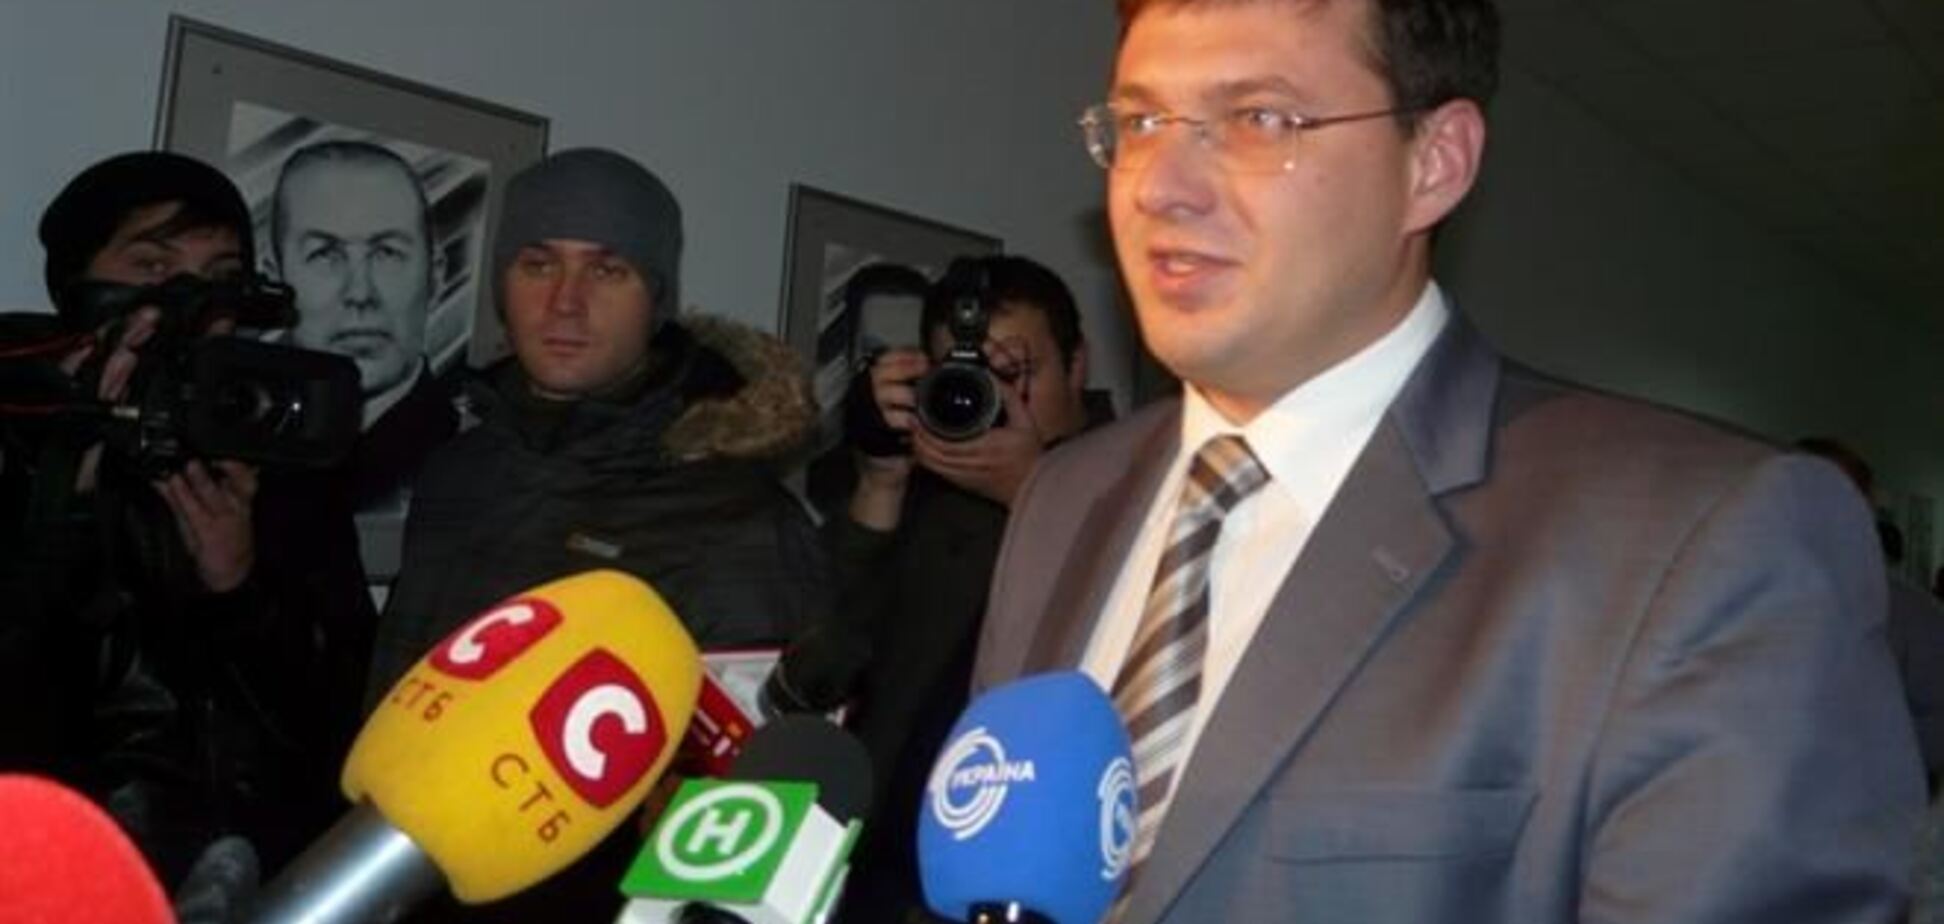 Депутат от УДАРа препятствует Броварам в получении 400 млн грн